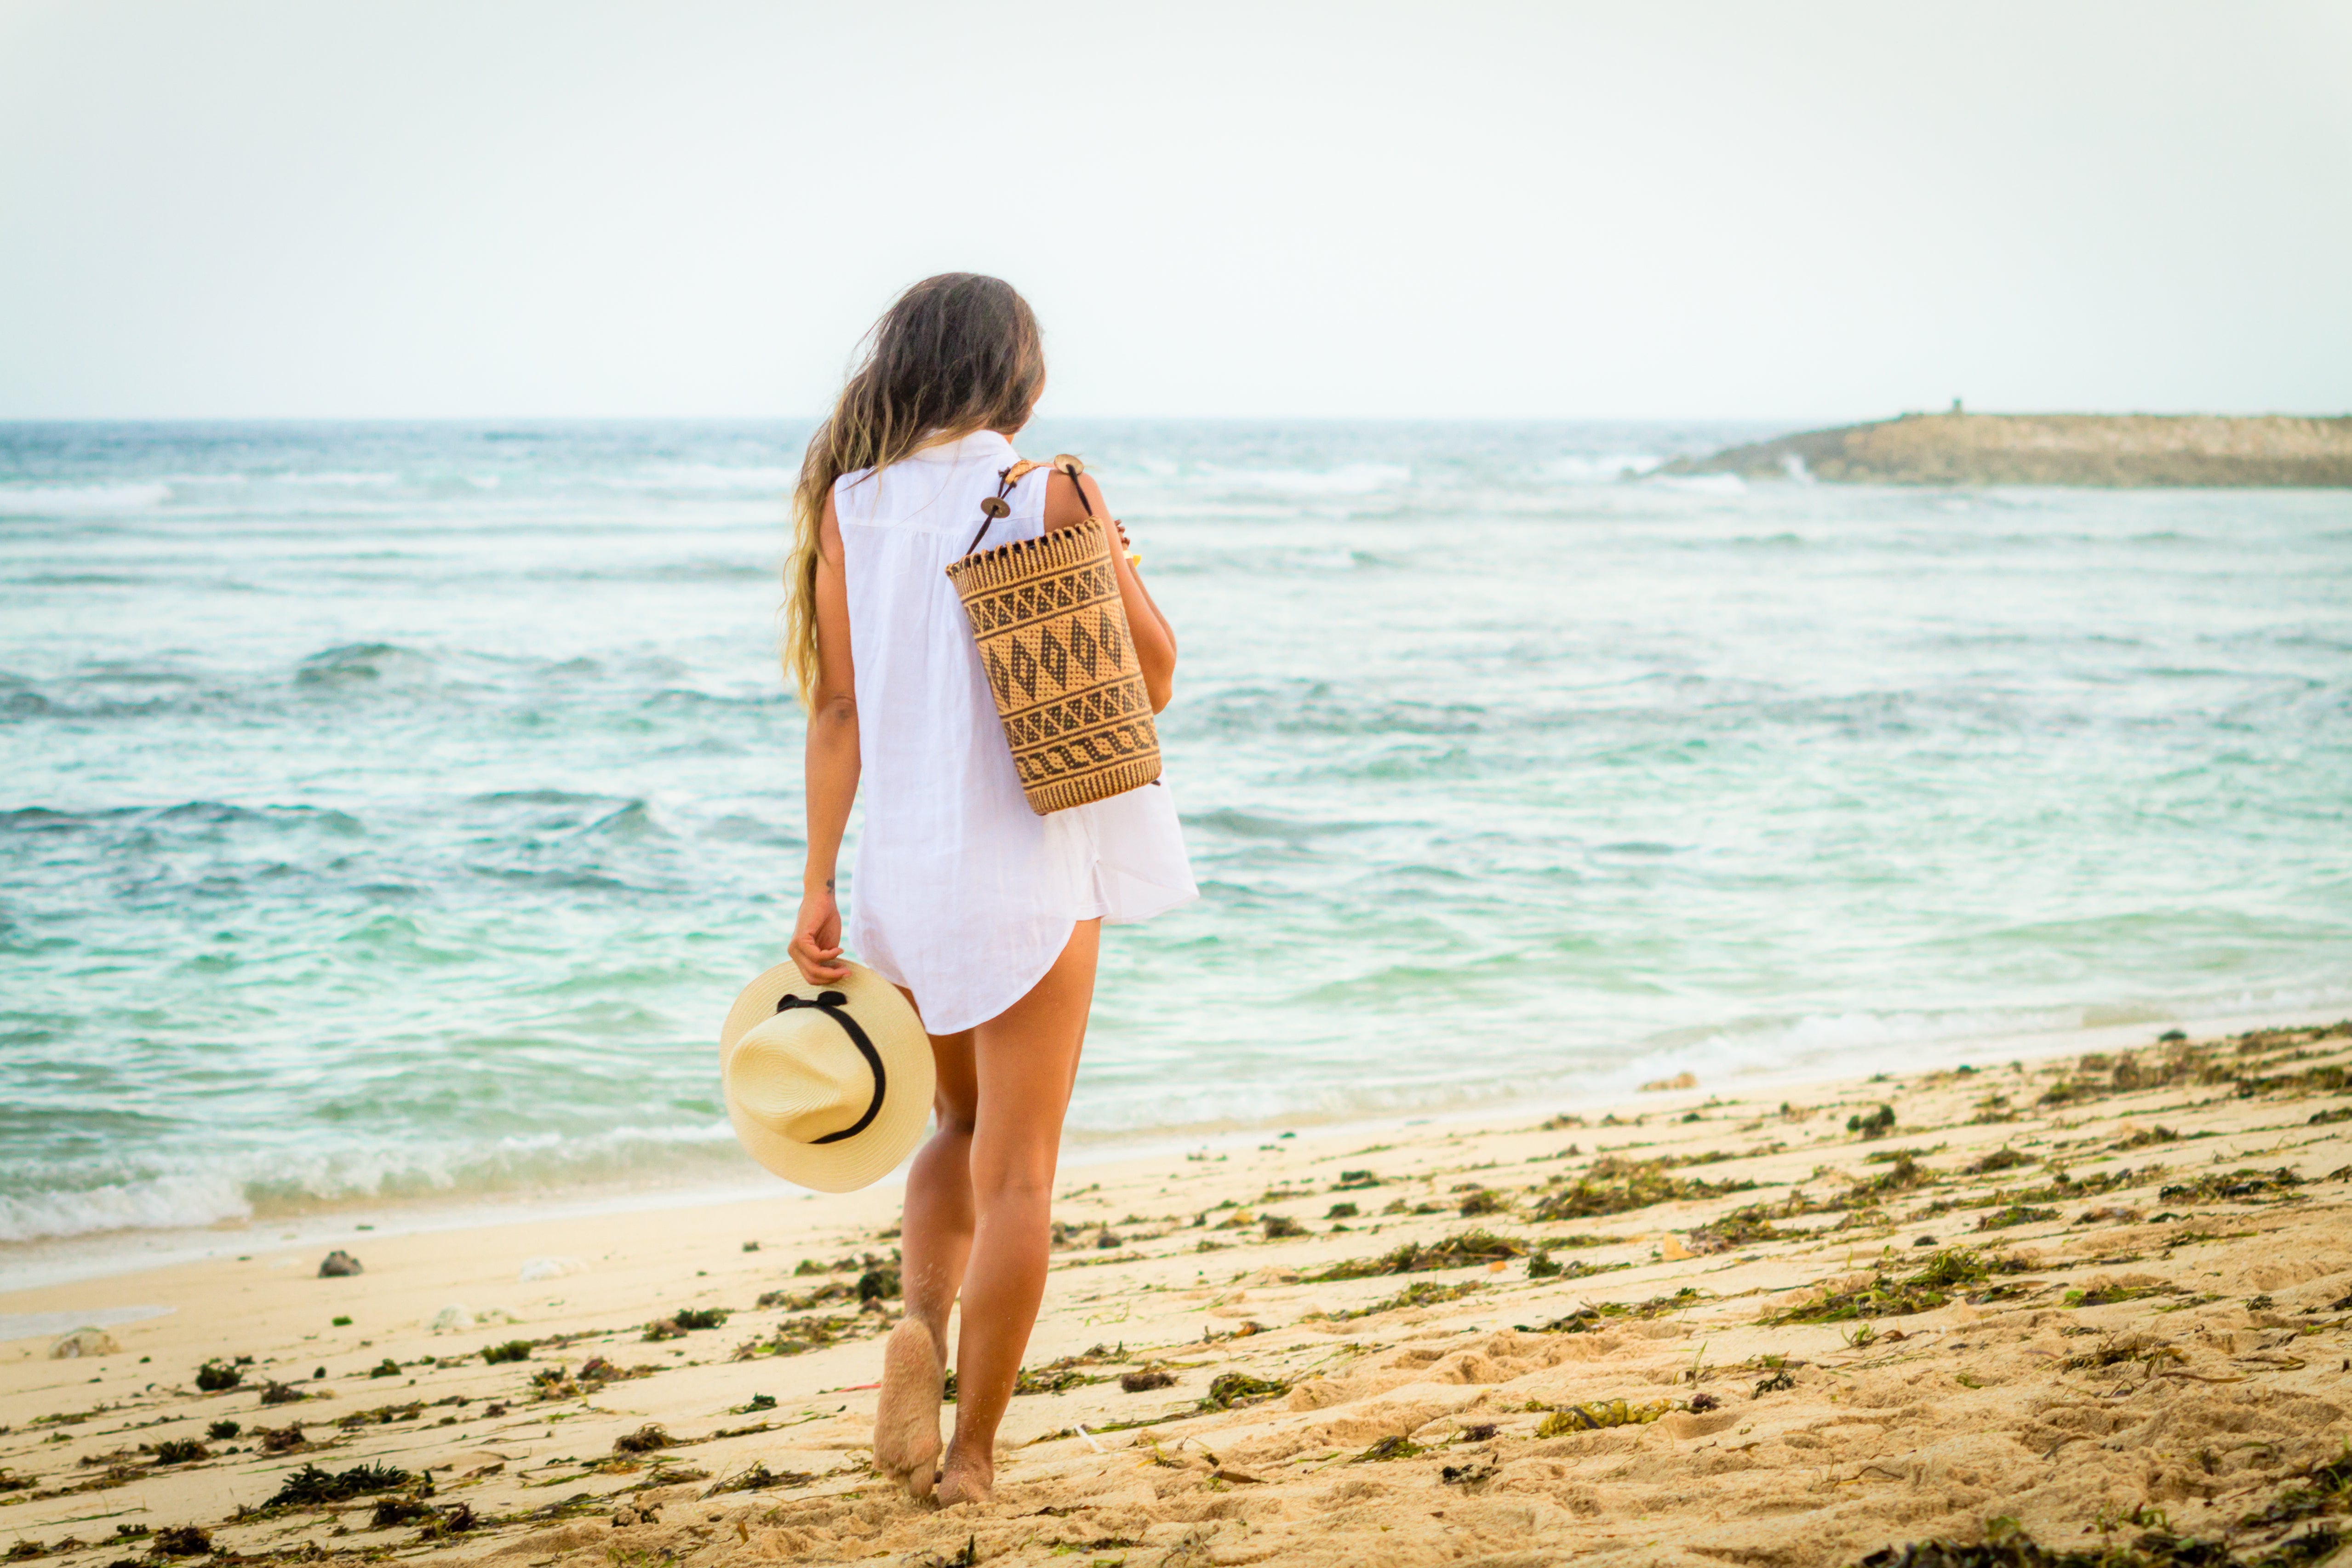 Model on beach wearing Made in Bali Woven Basket Women Backpack